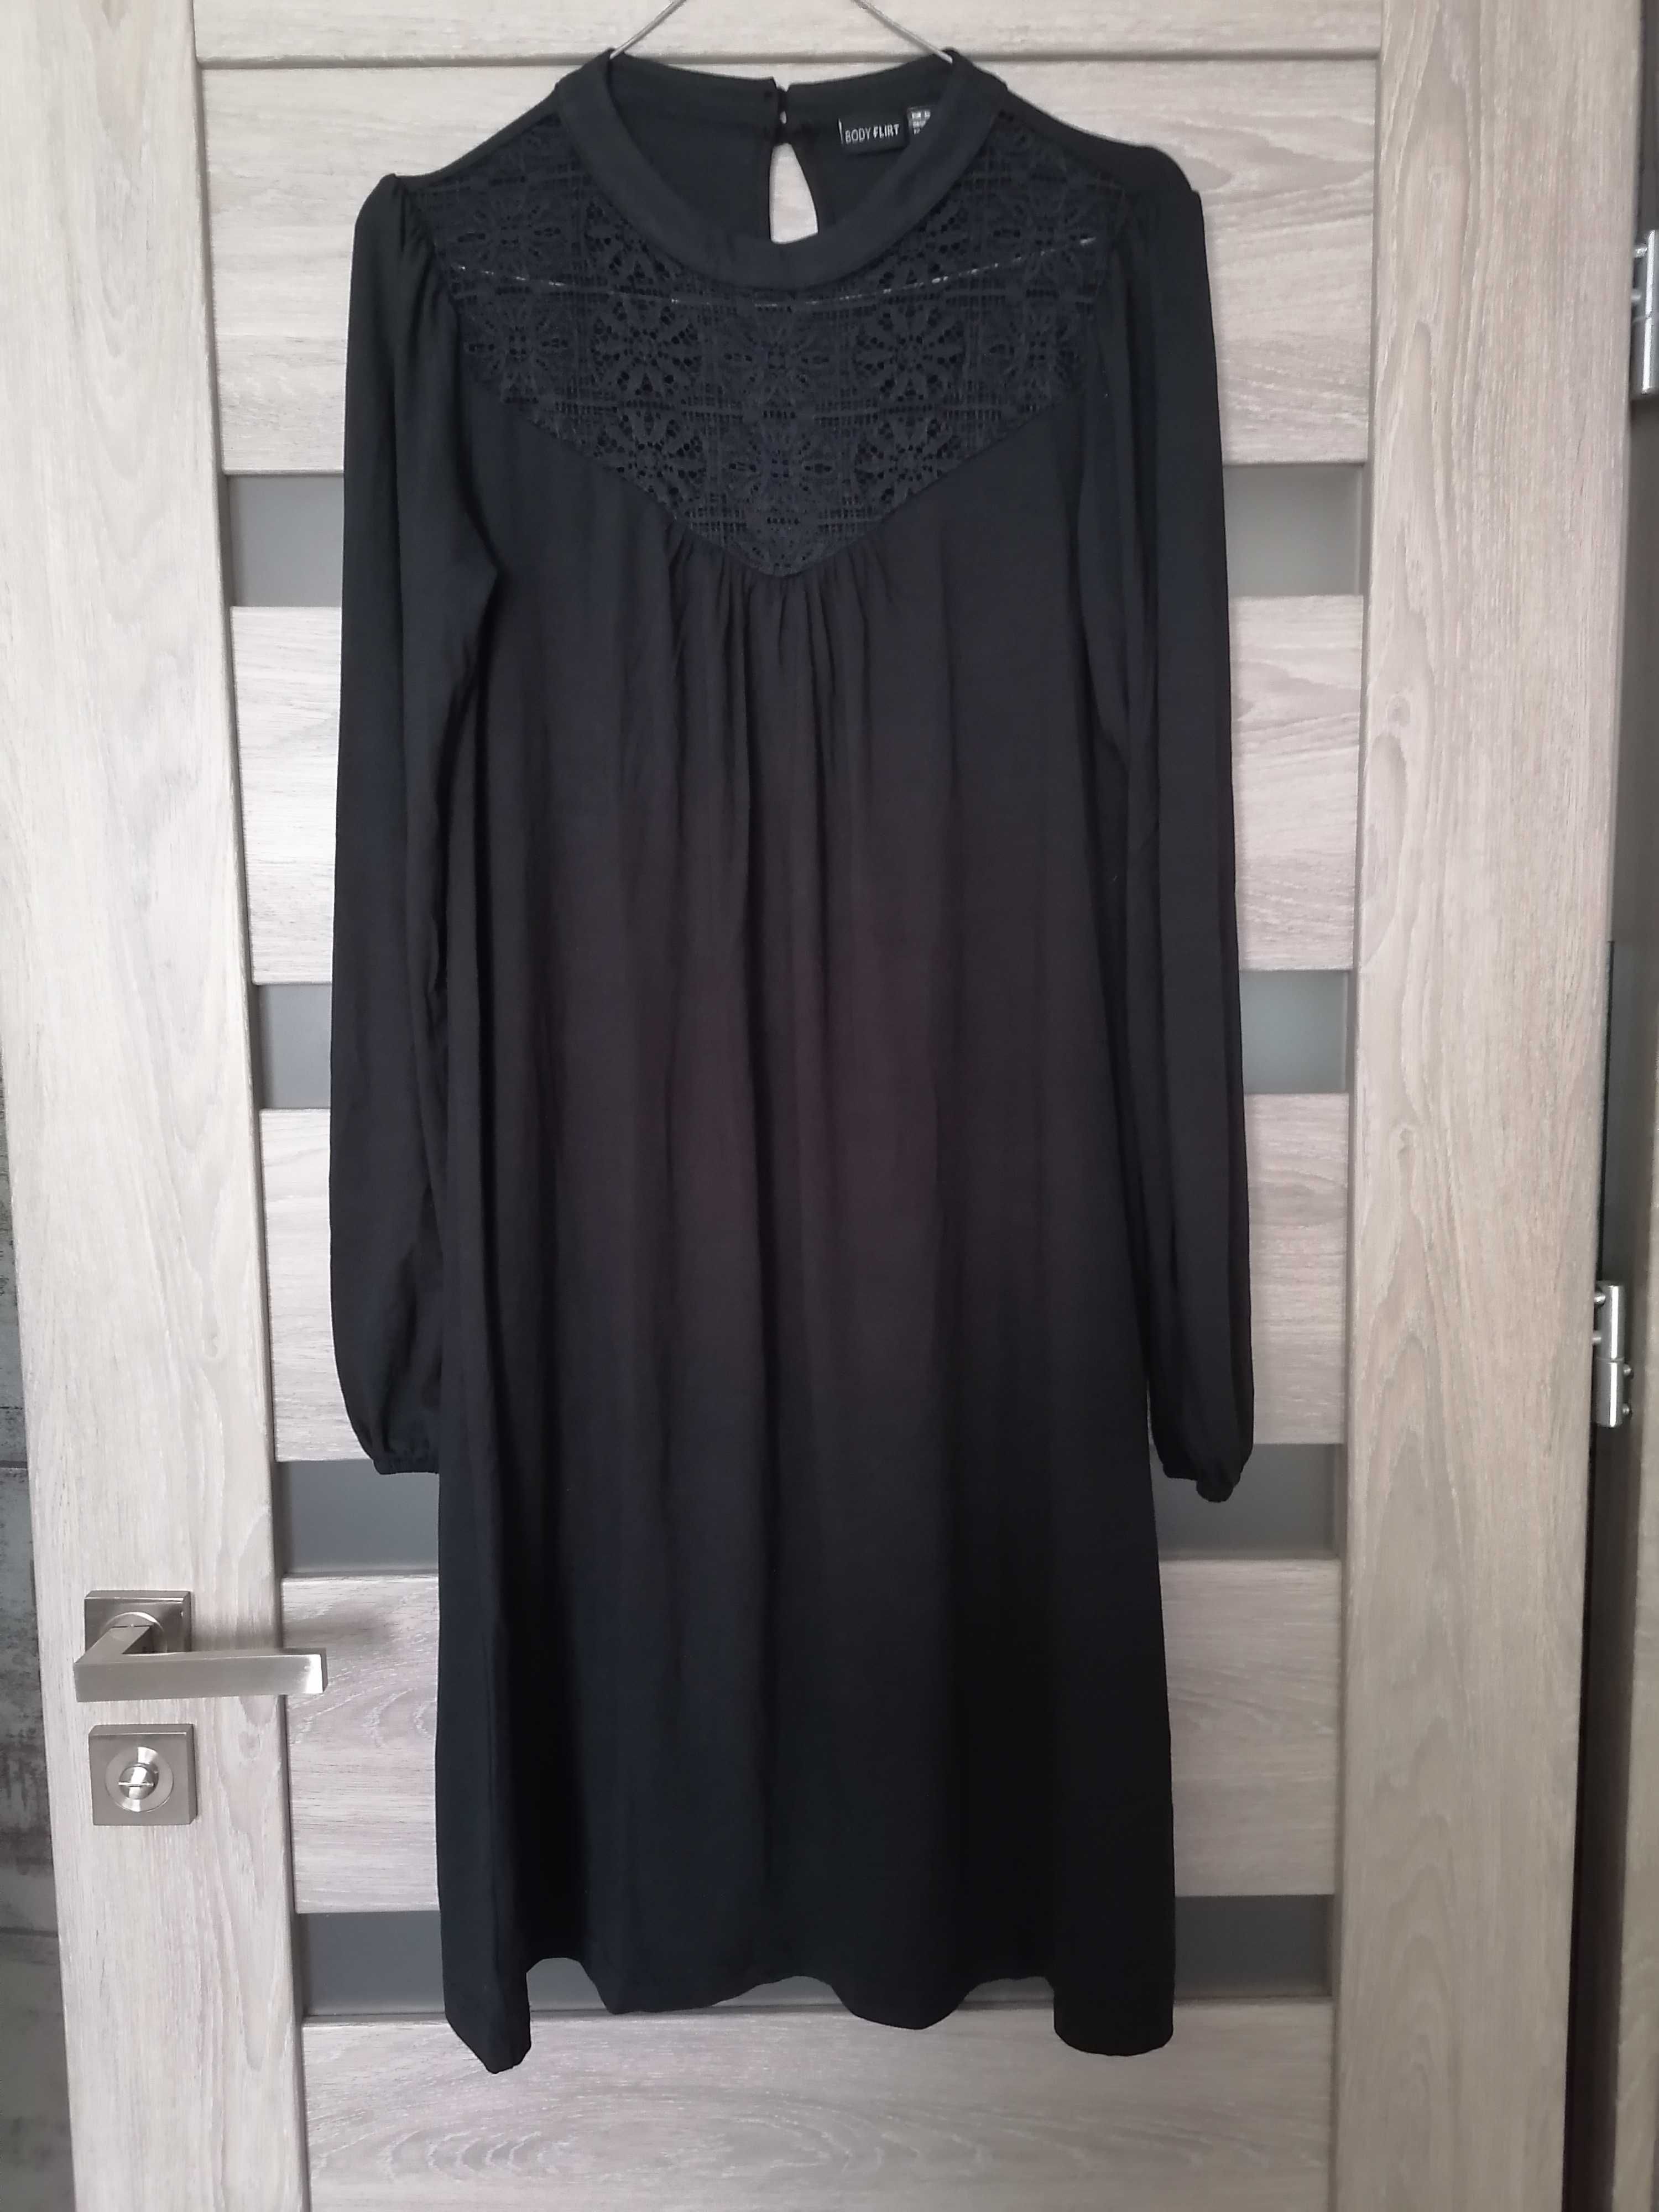 Nowa czarna sukienka galowa egzaminy zakończenie roku 32 158